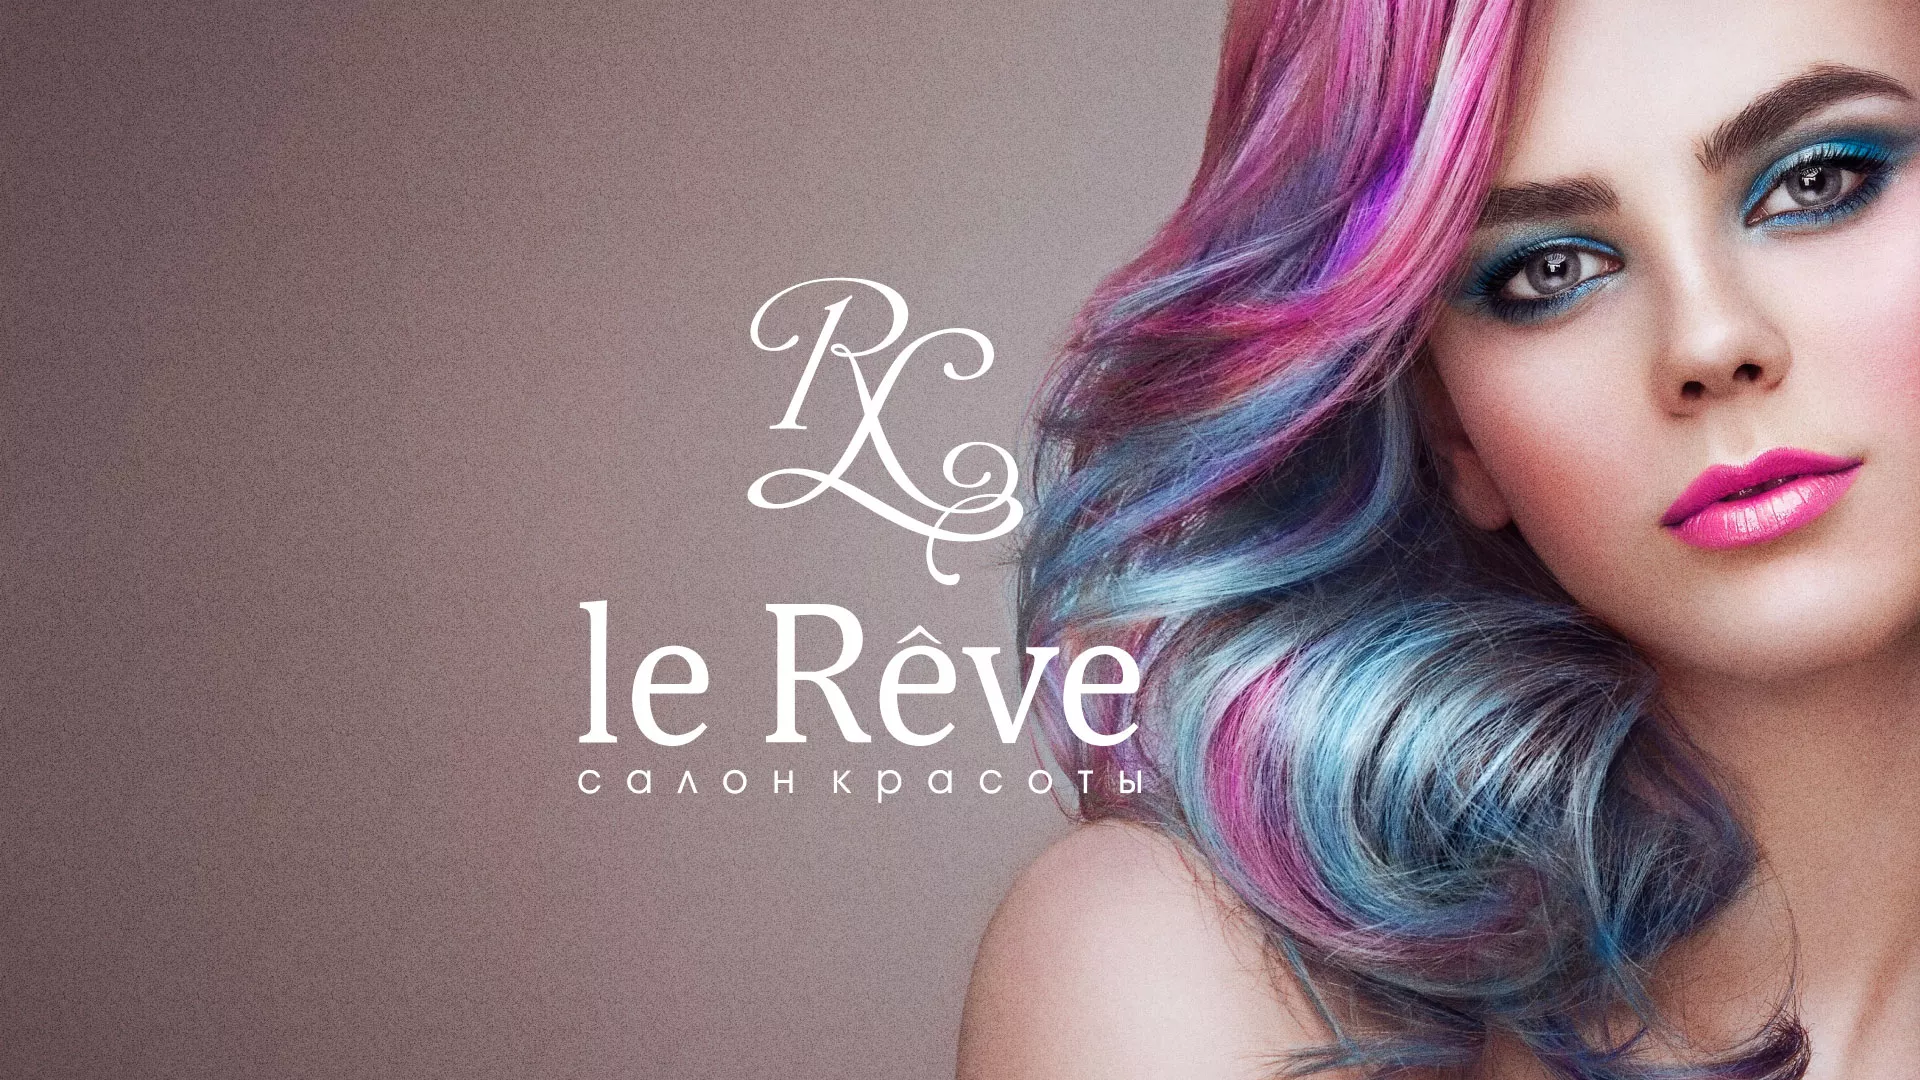 Создание сайта для салона красоты «Le Reve» в Острогожске